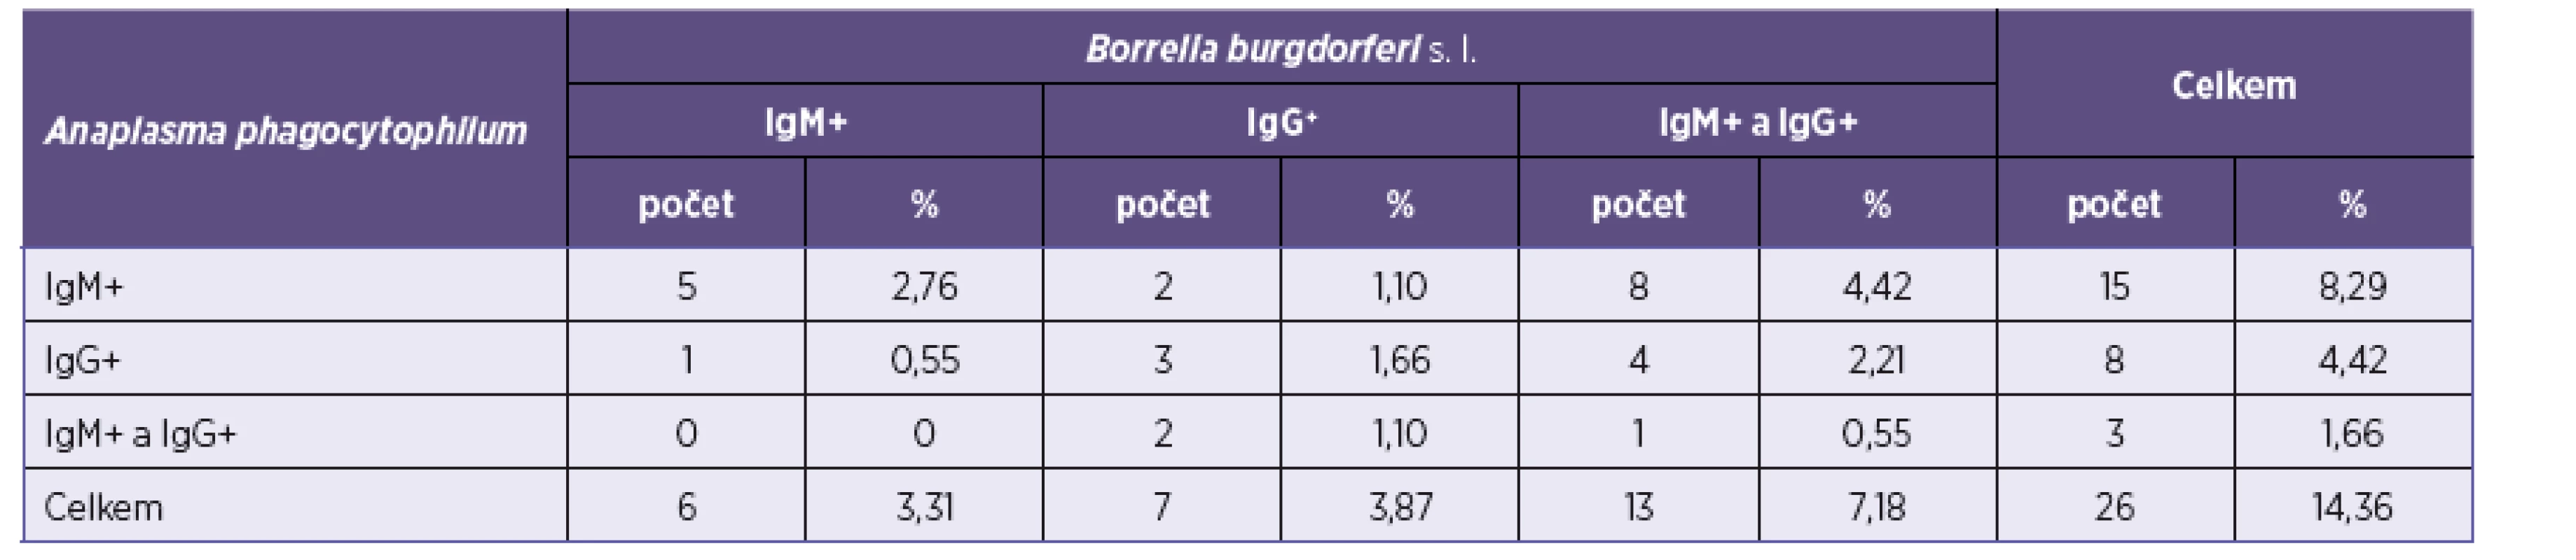 Výsledky vyšetření protilátek proti B. burgdorferi s. l.<sup>*</sup>
Table 1. Results of the screening for anti-B. burgdorferi s. l. antibodies<sup>*</sup>